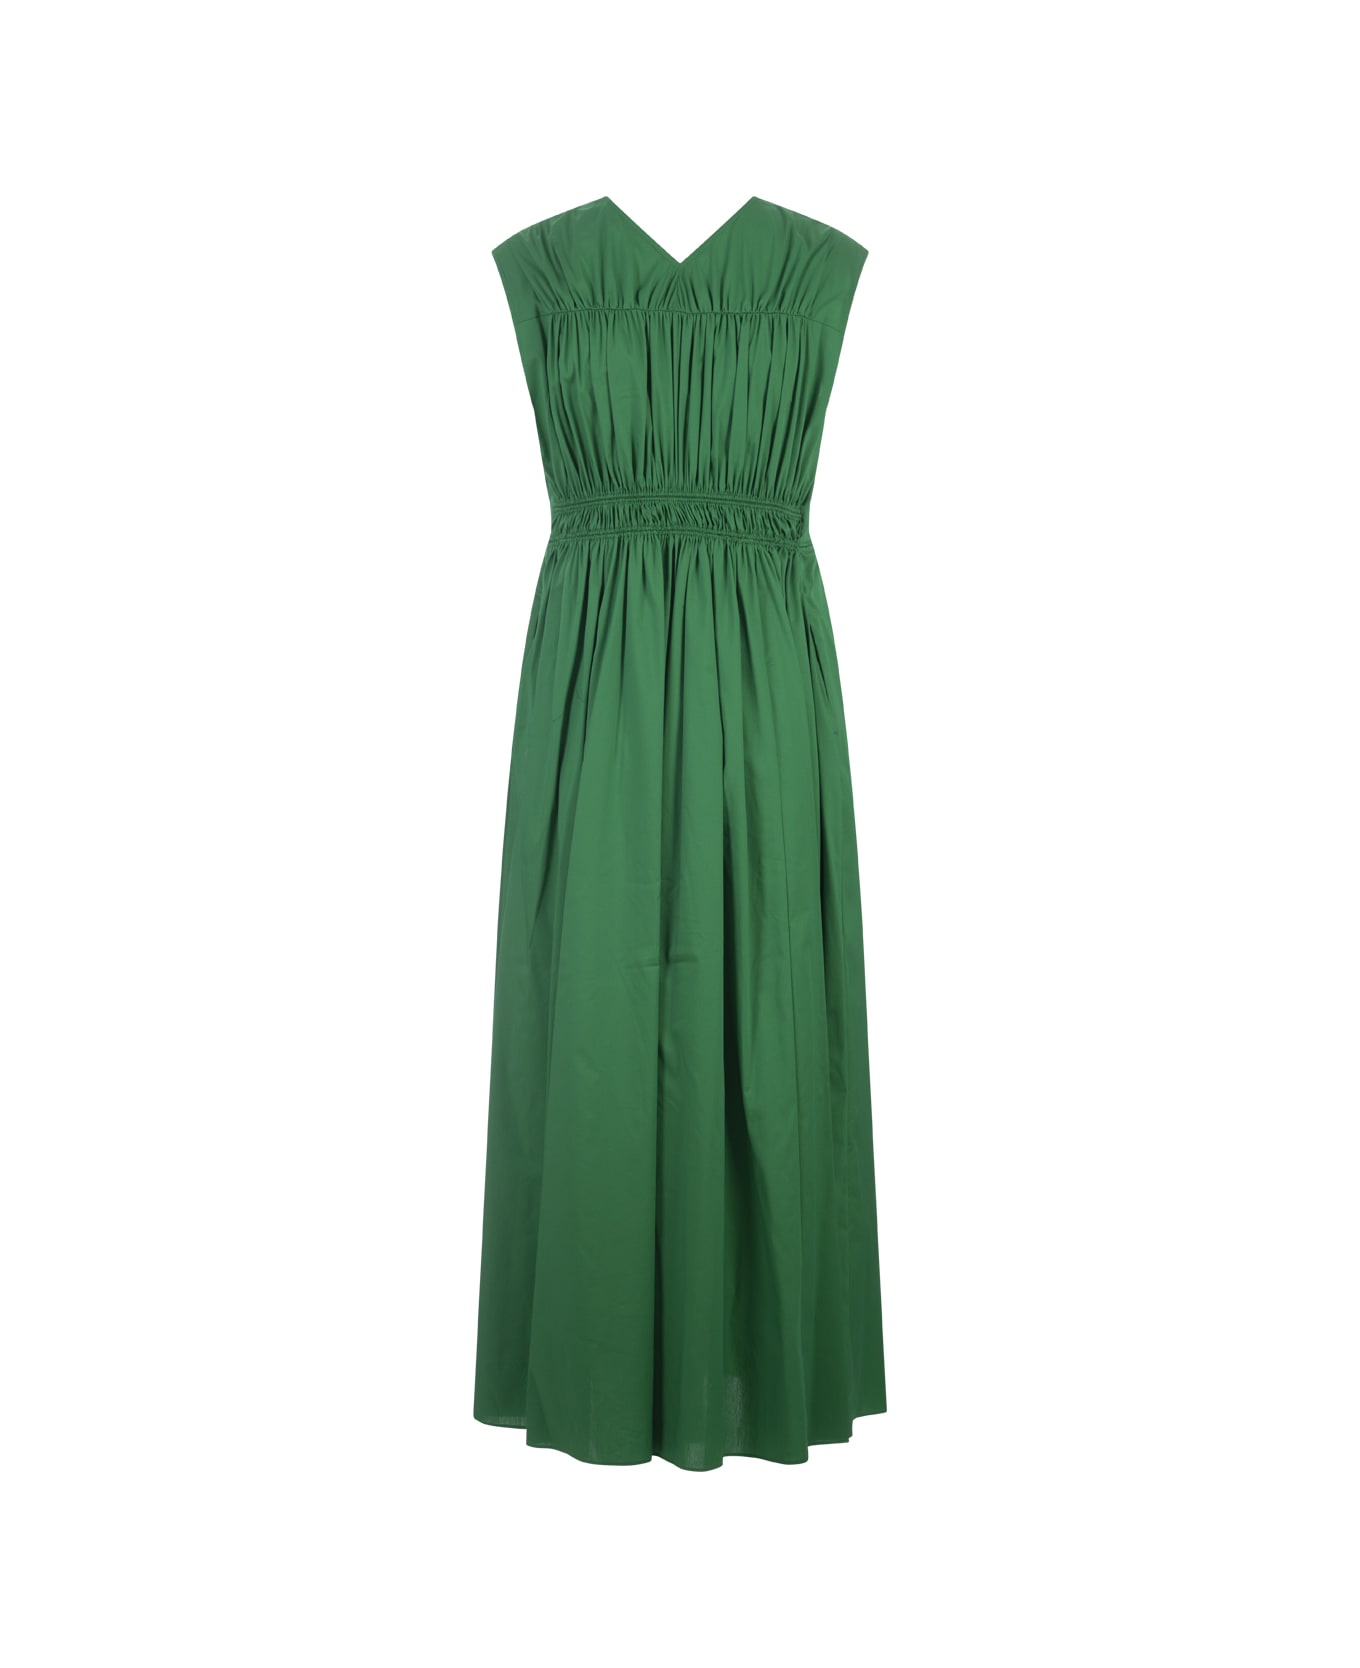 Diane Von Furstenberg Gillian Dress In Signature Green - Green